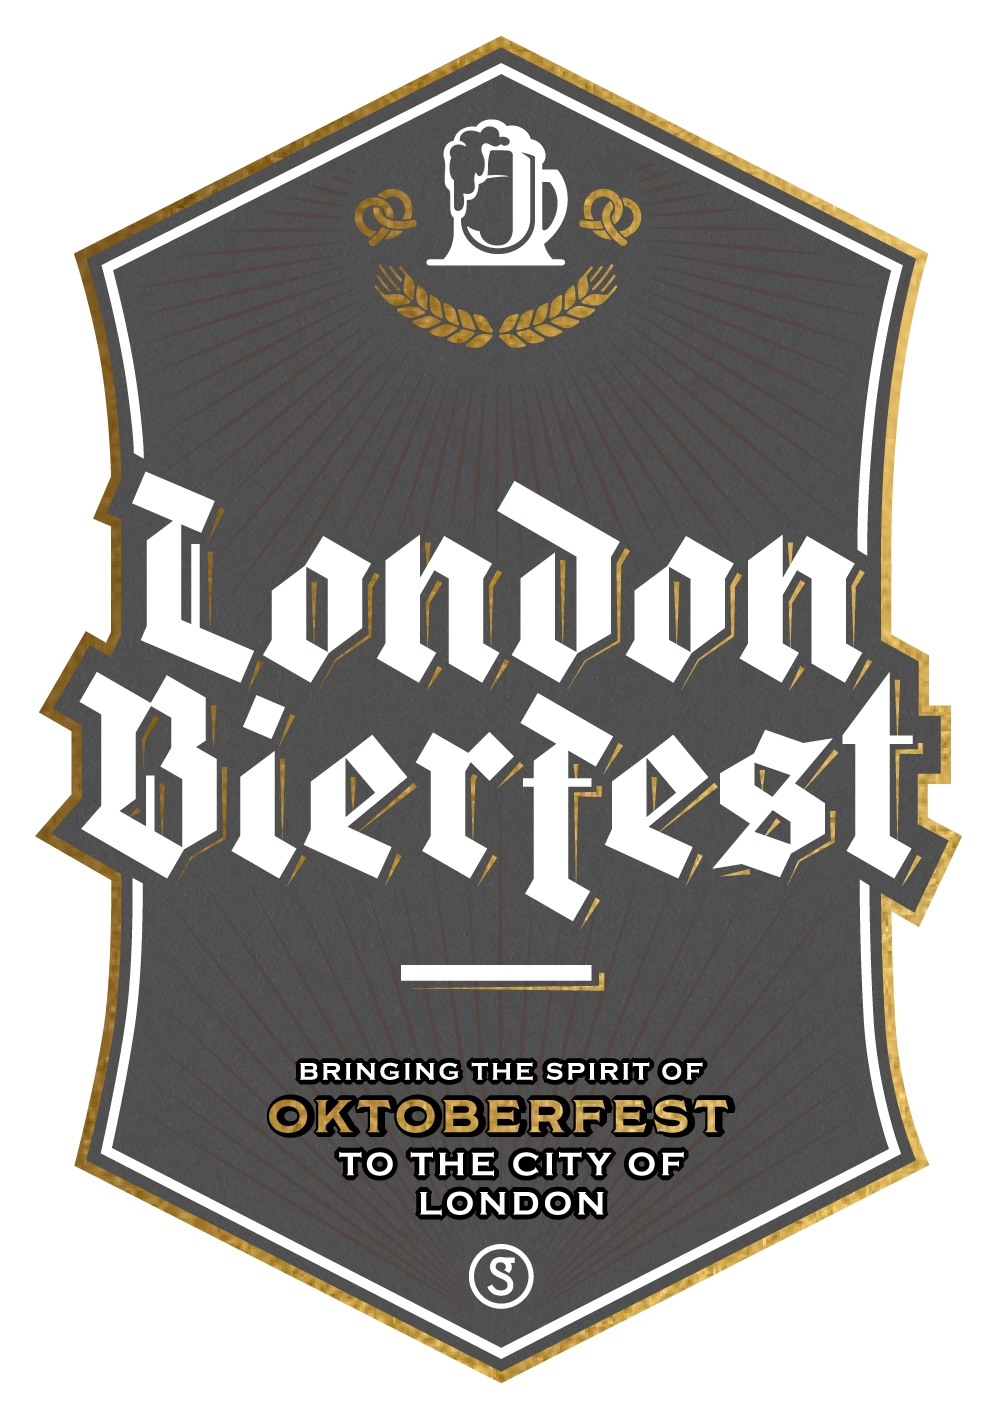 London Bierfest